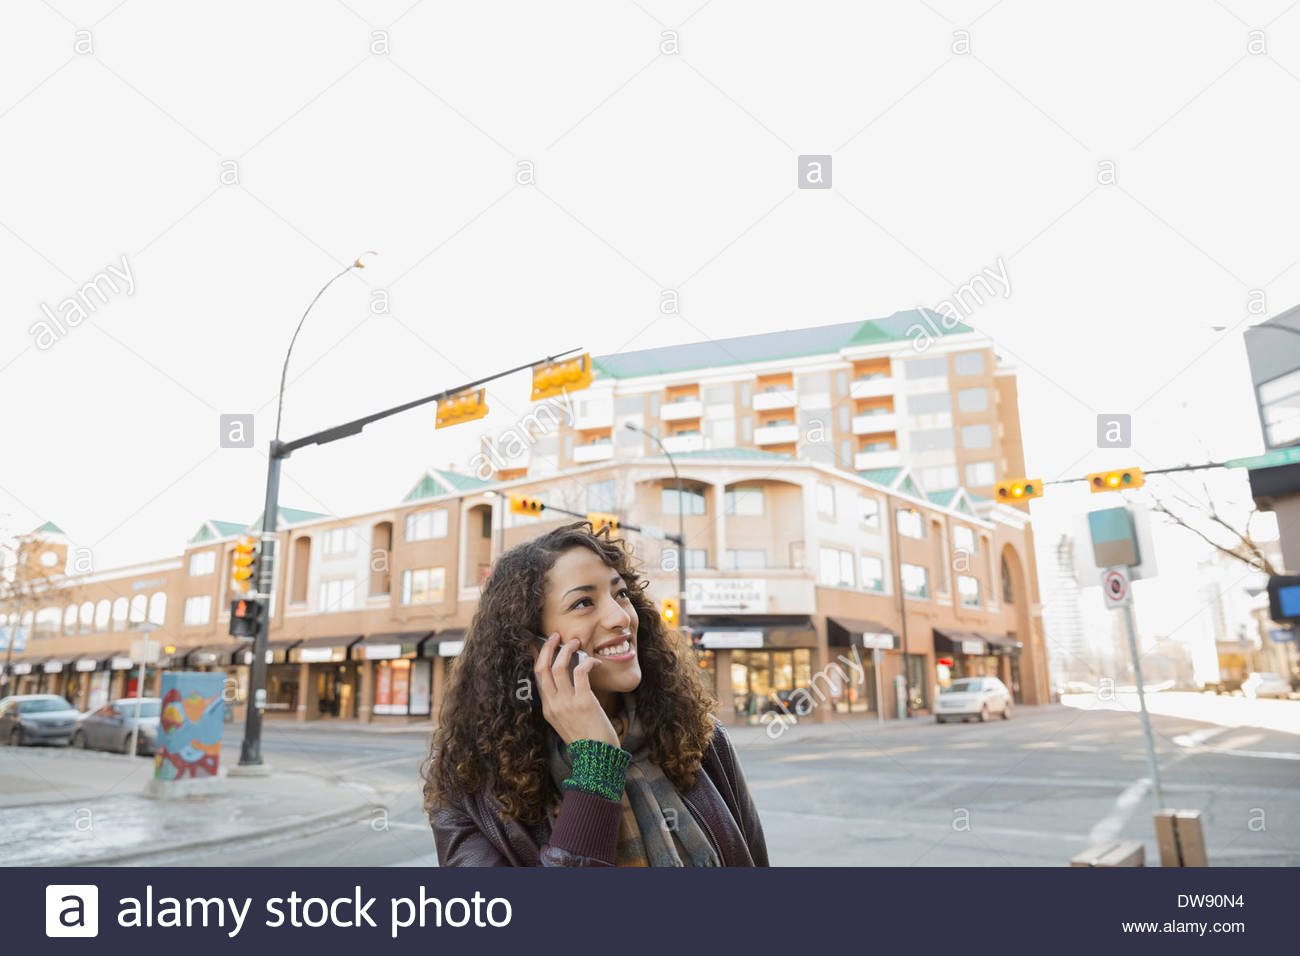 Smiling woman répondre à smart phone on city street Banque D'Images